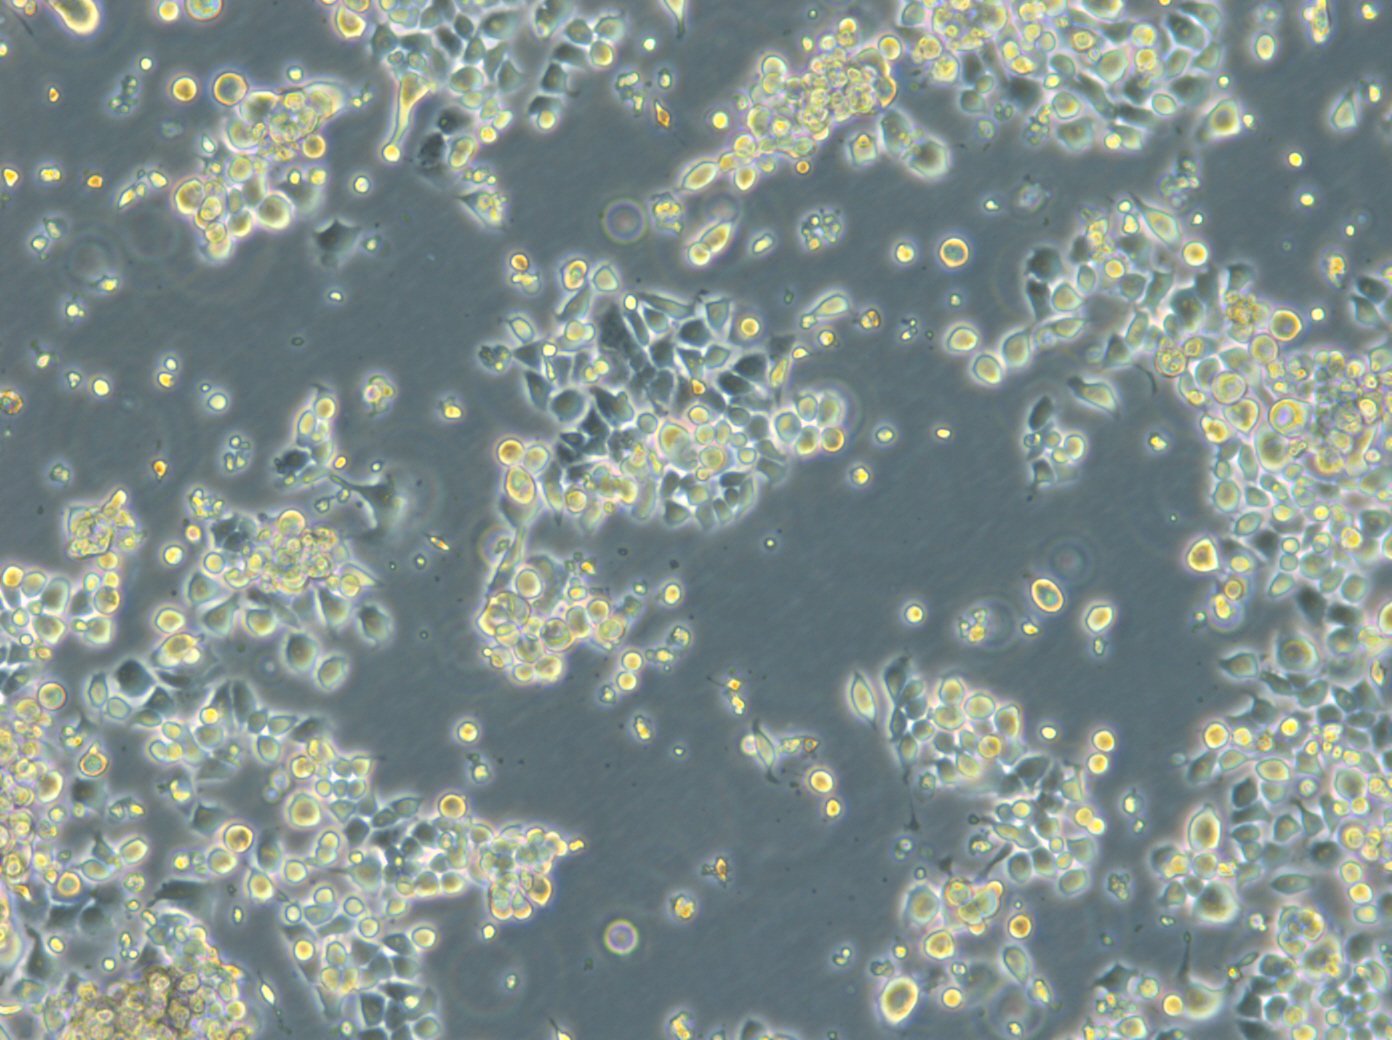 HROC87 T0 M2 Cells